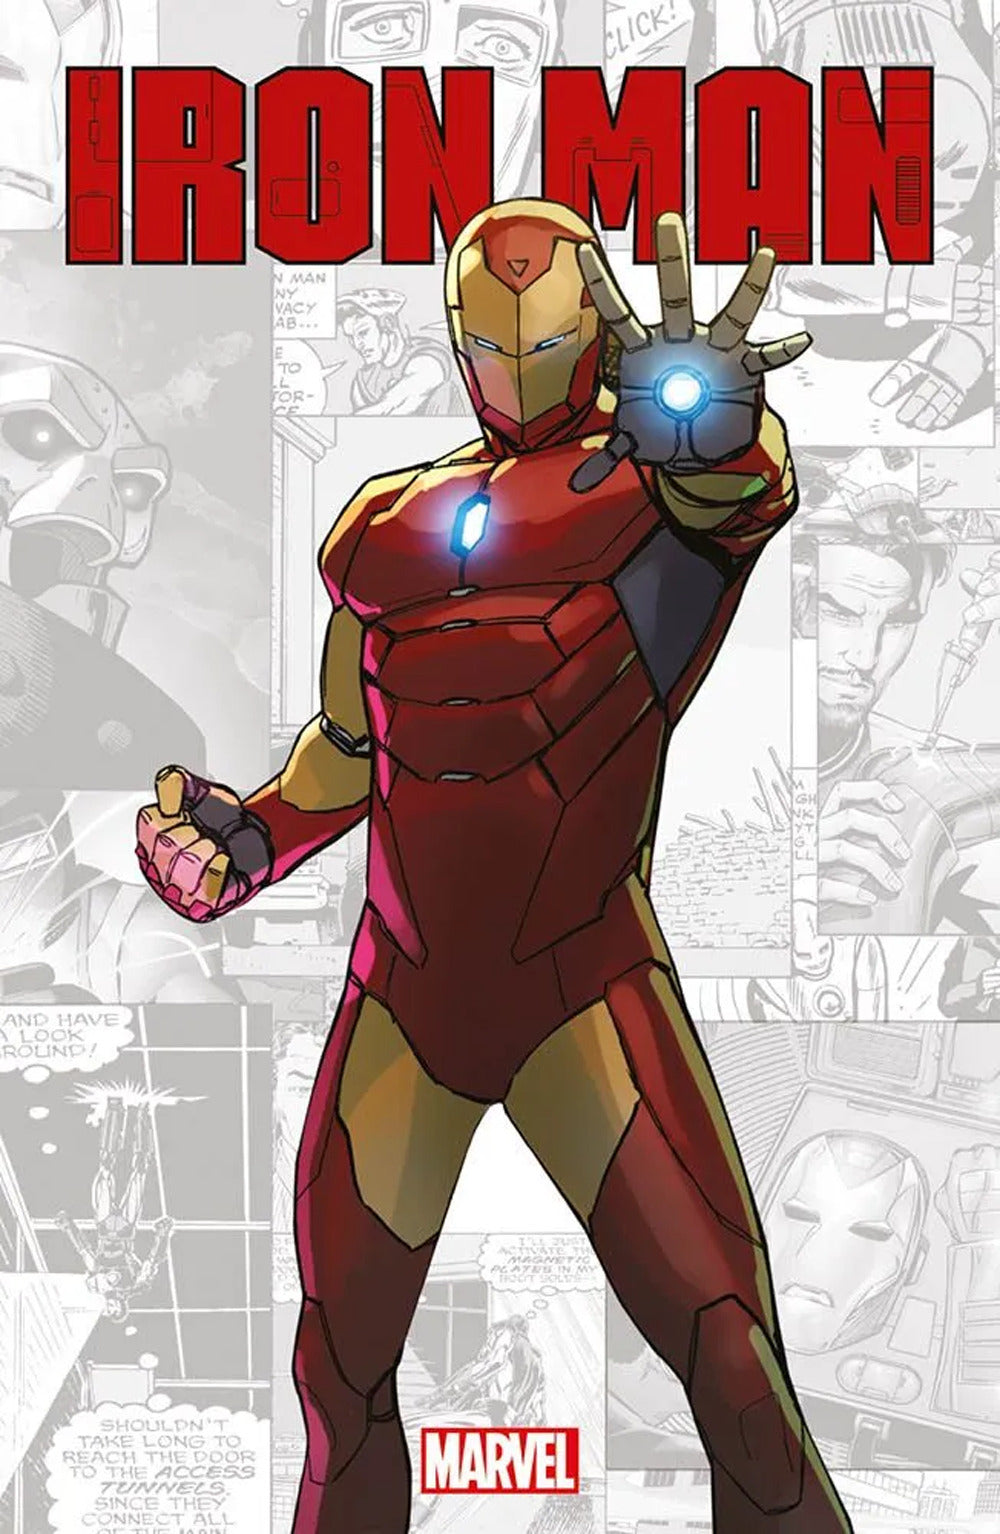 Iron Man. Marvel-verse.